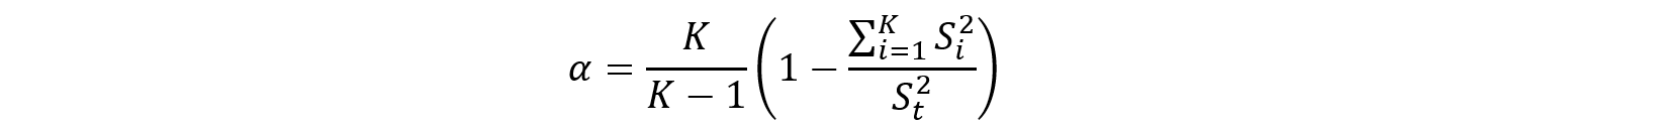 Ecuación Alfa de Cronbach.